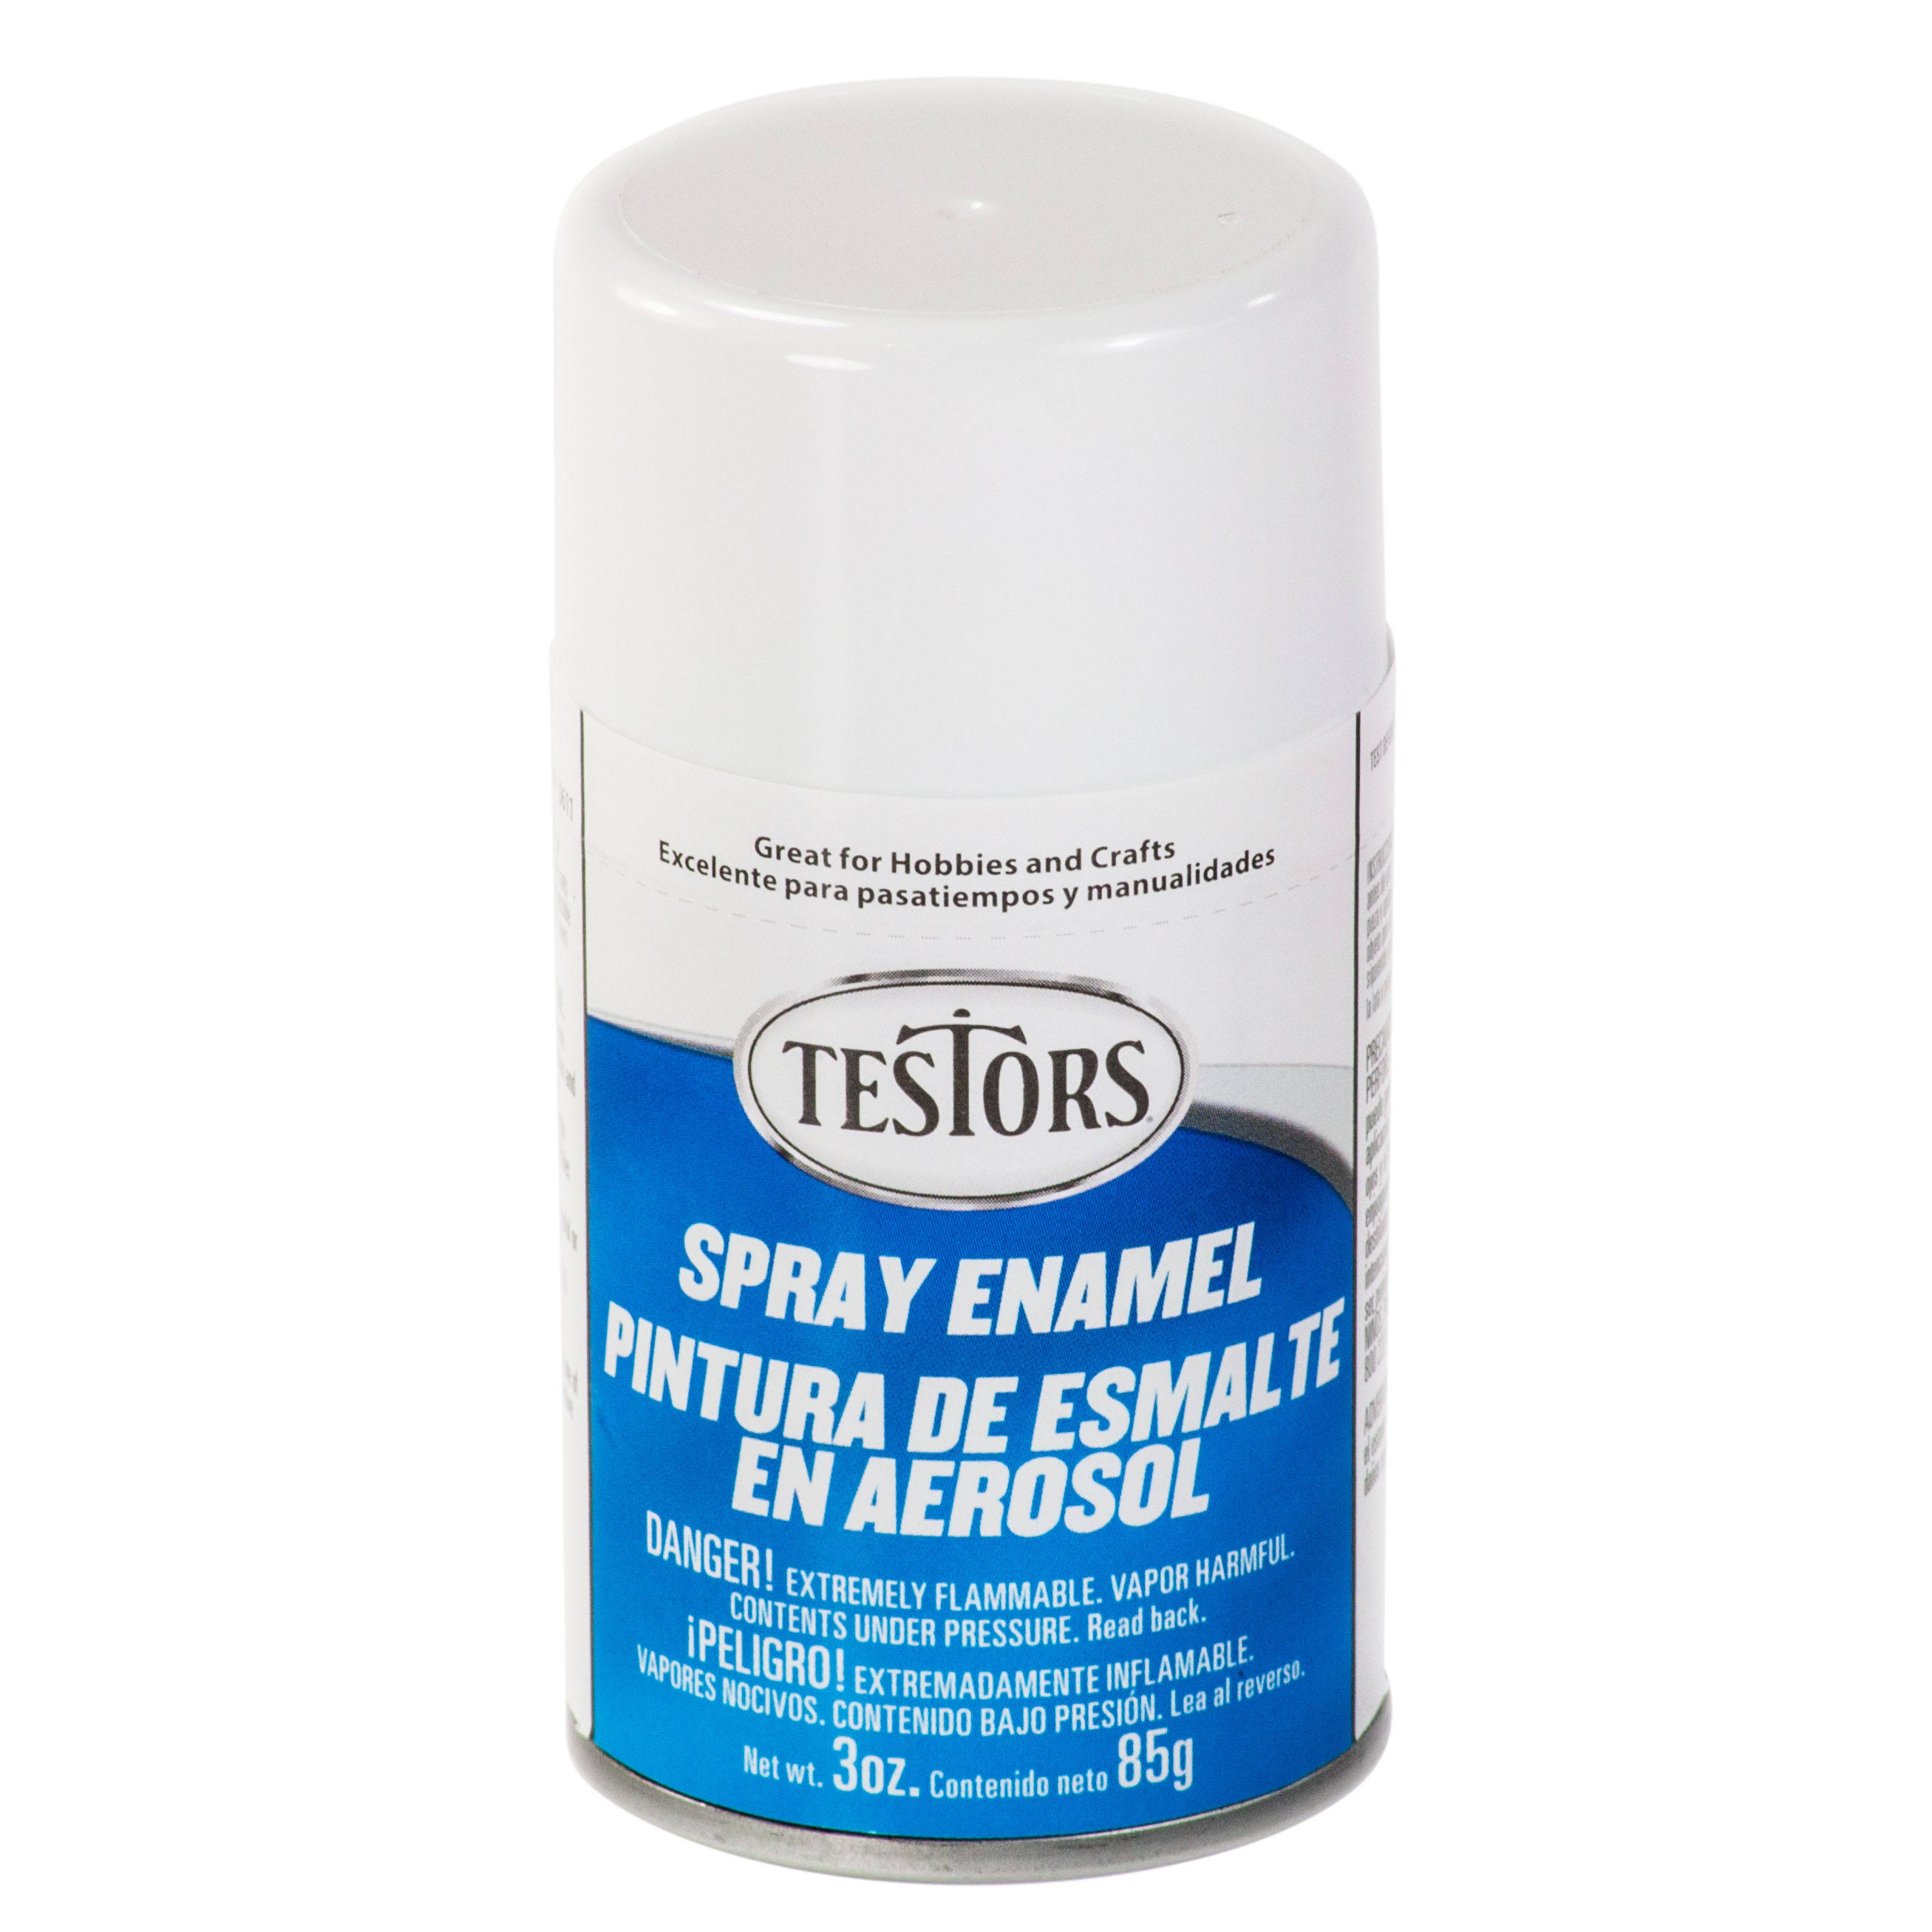 Testors Spray Enamel - White, 85g